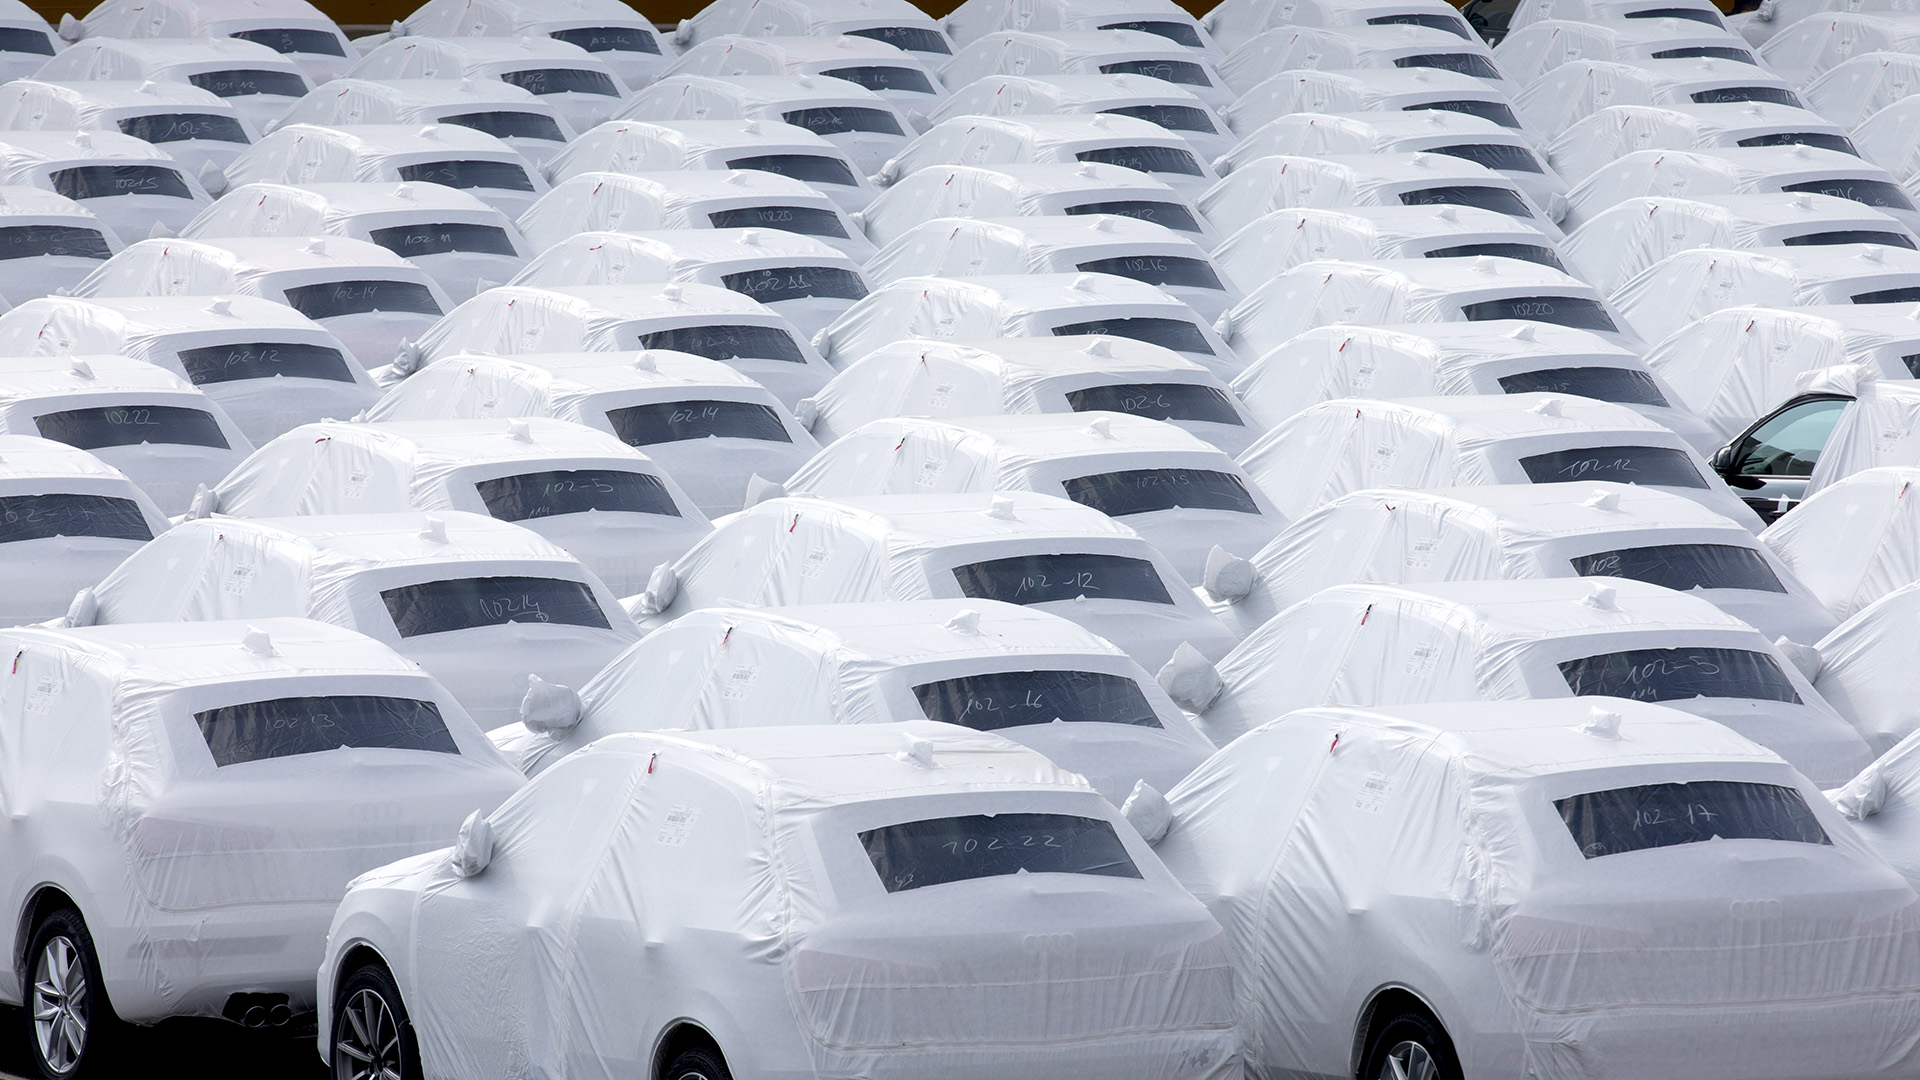 Verpackte Neuwagen des VW-Konzerns stehen nebeneinander | picture alliance/dpa